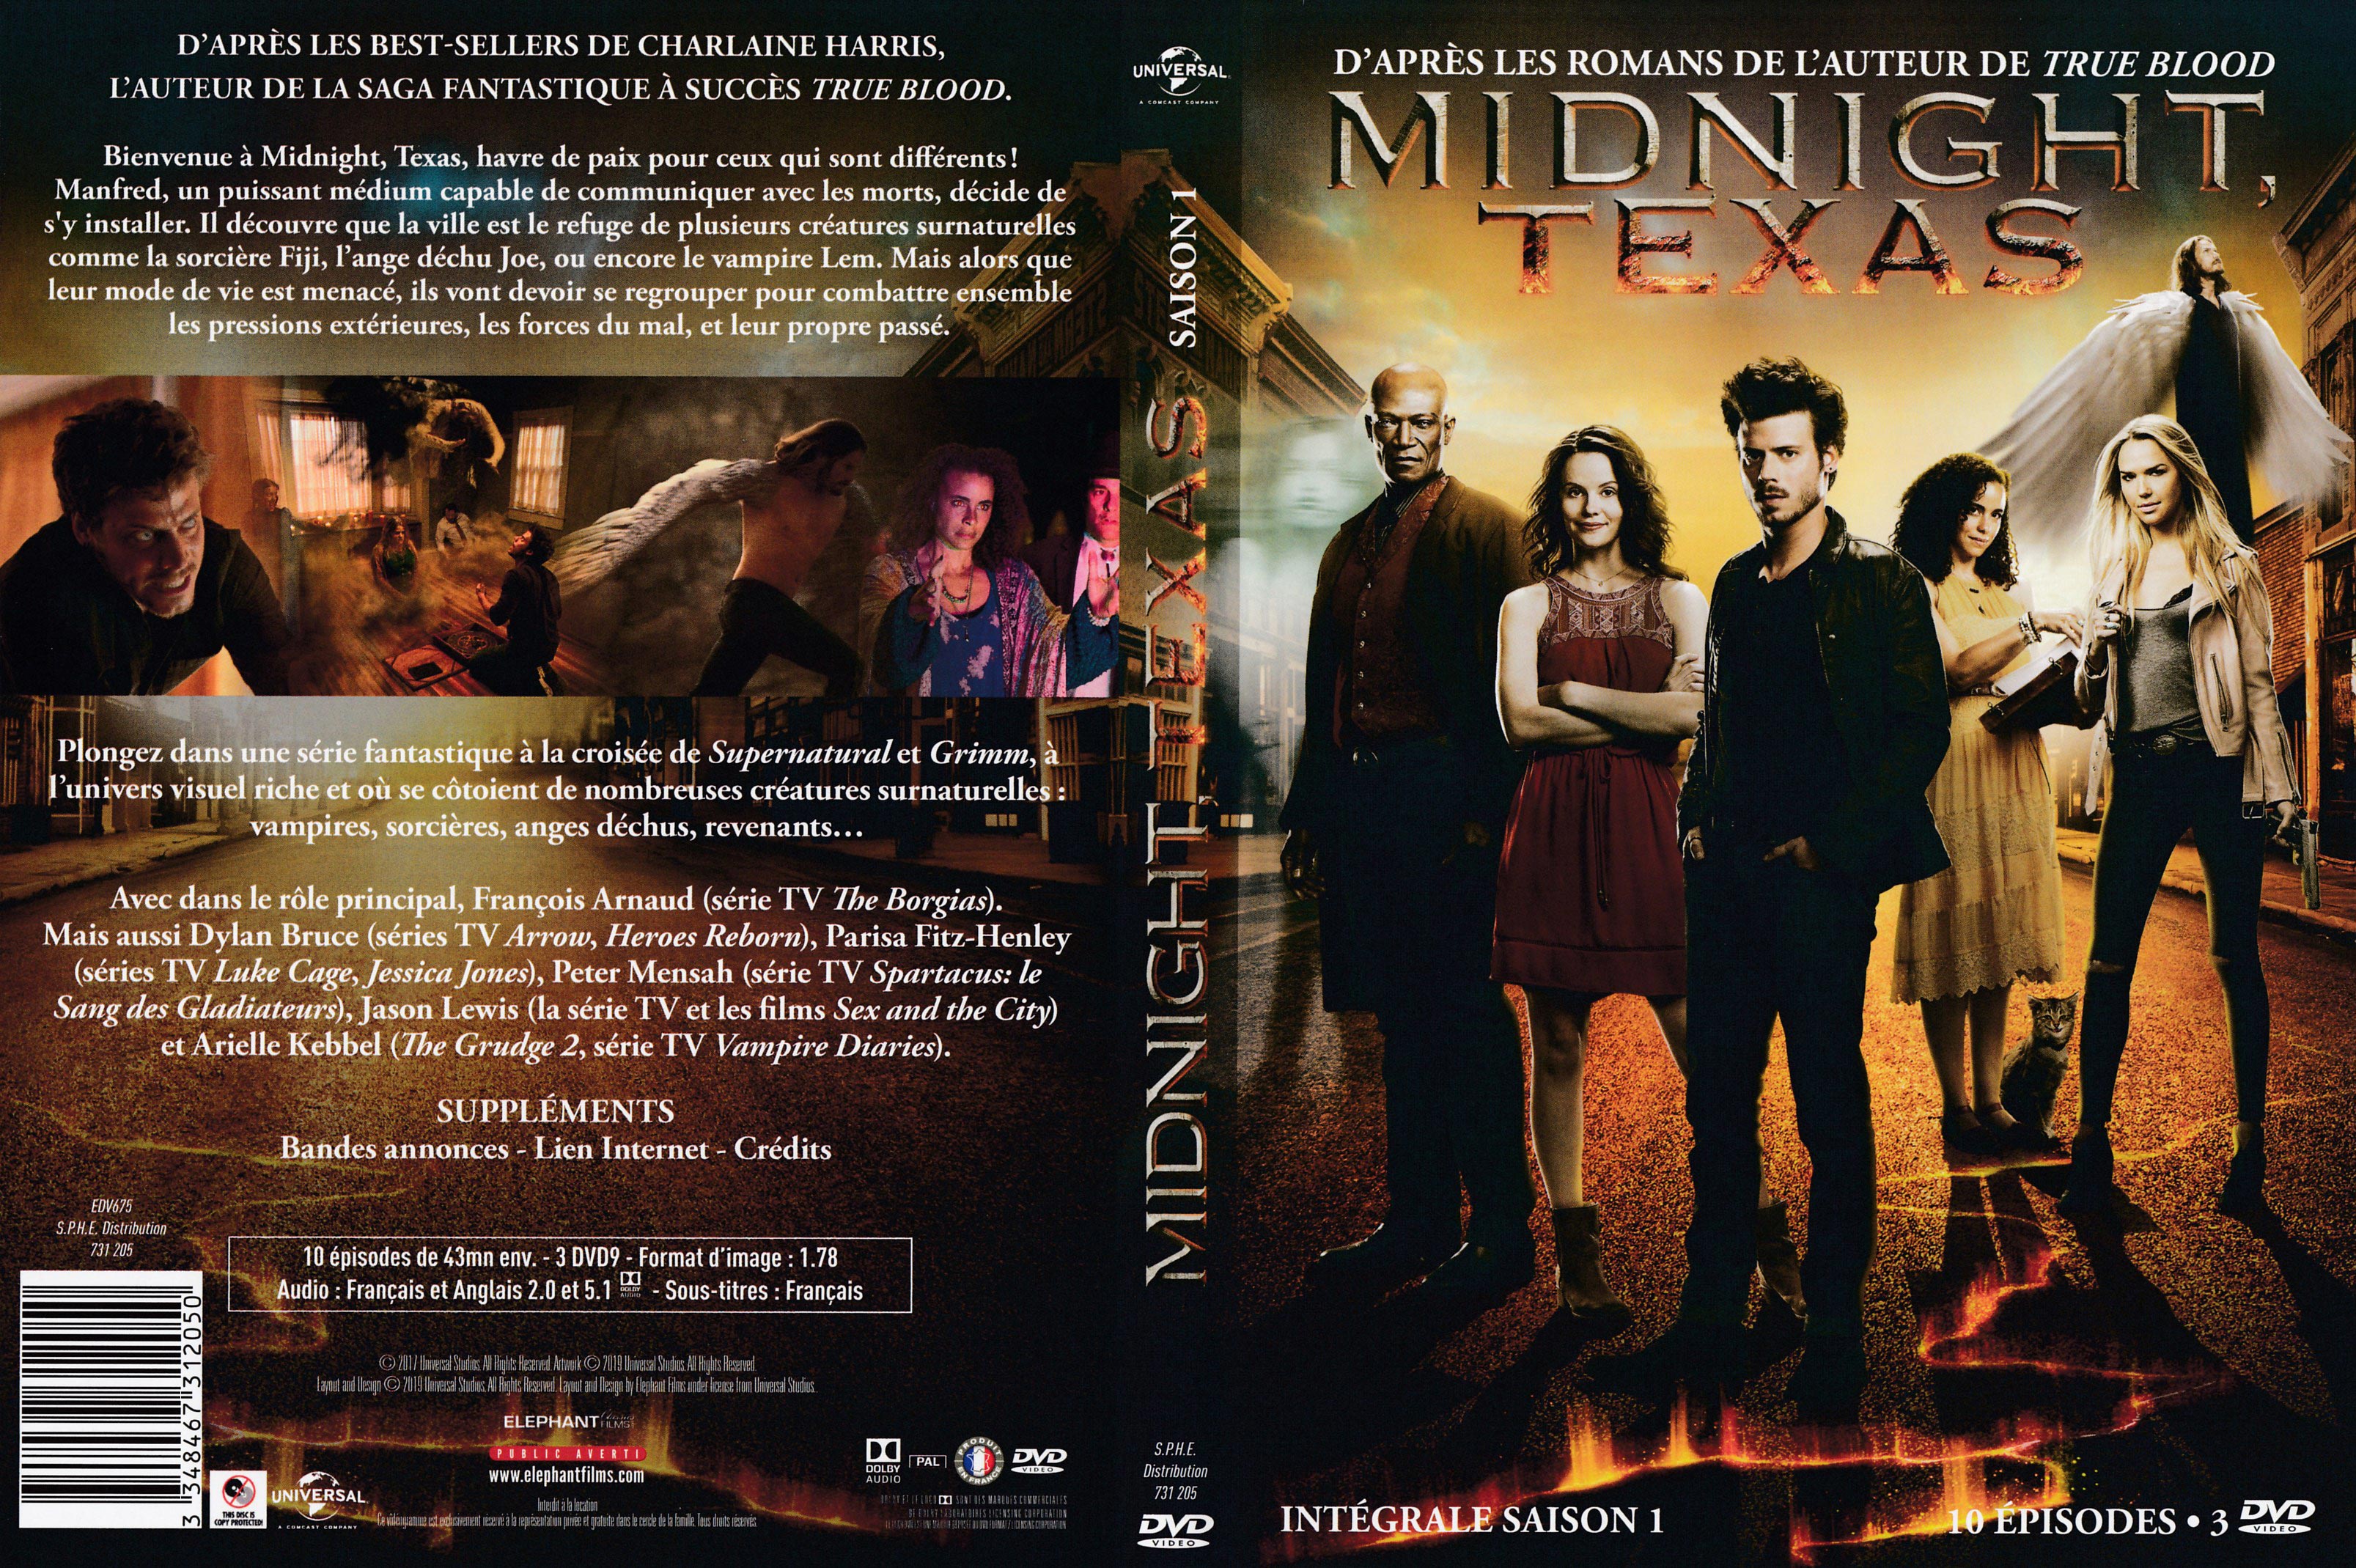 Jaquette DVD Midnight texas Saison 1